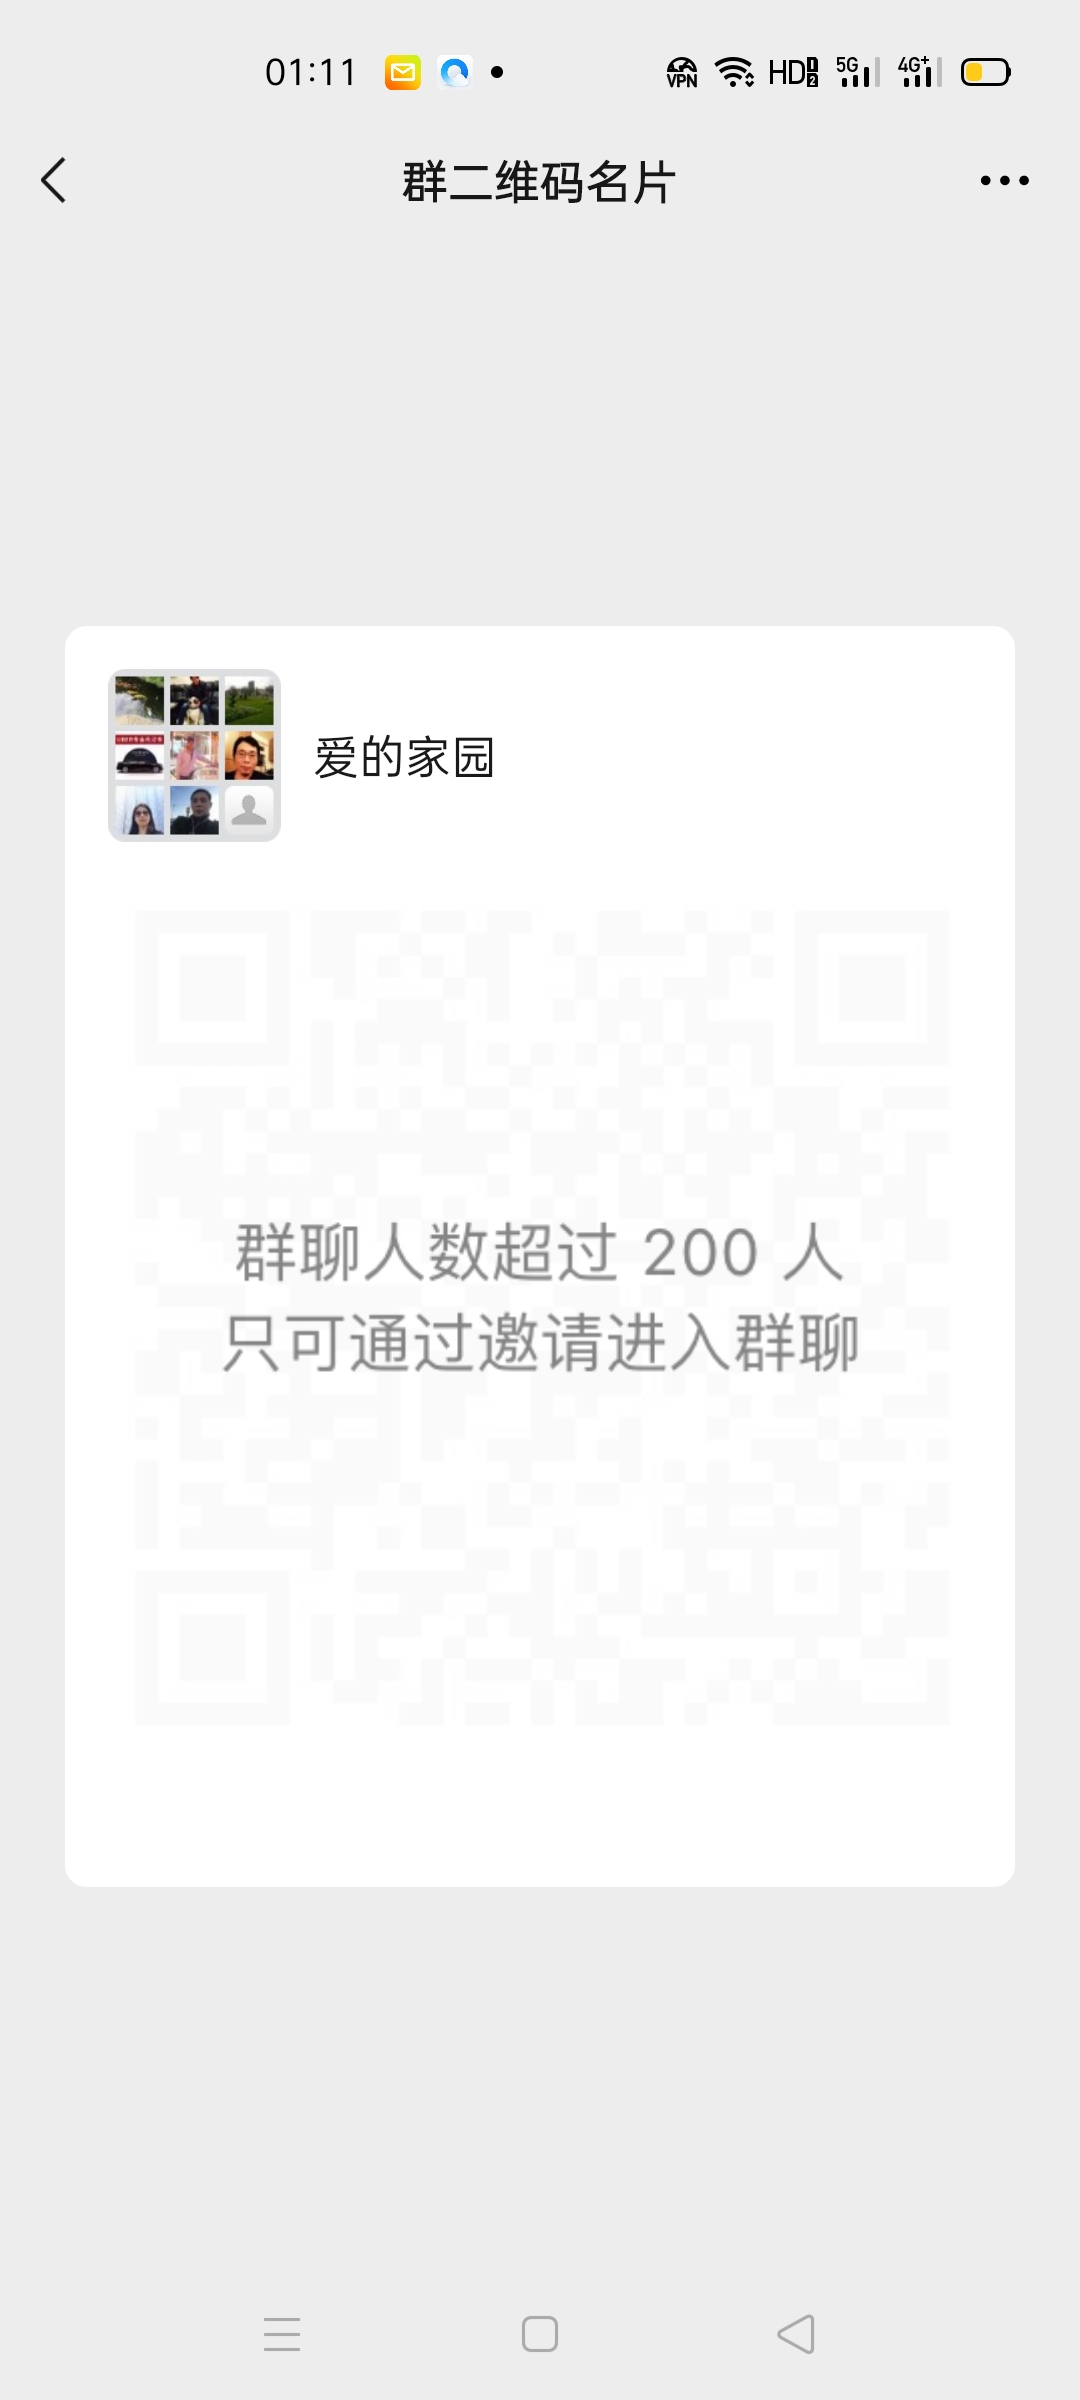 中国到美国海运专线群 群主微信二维码